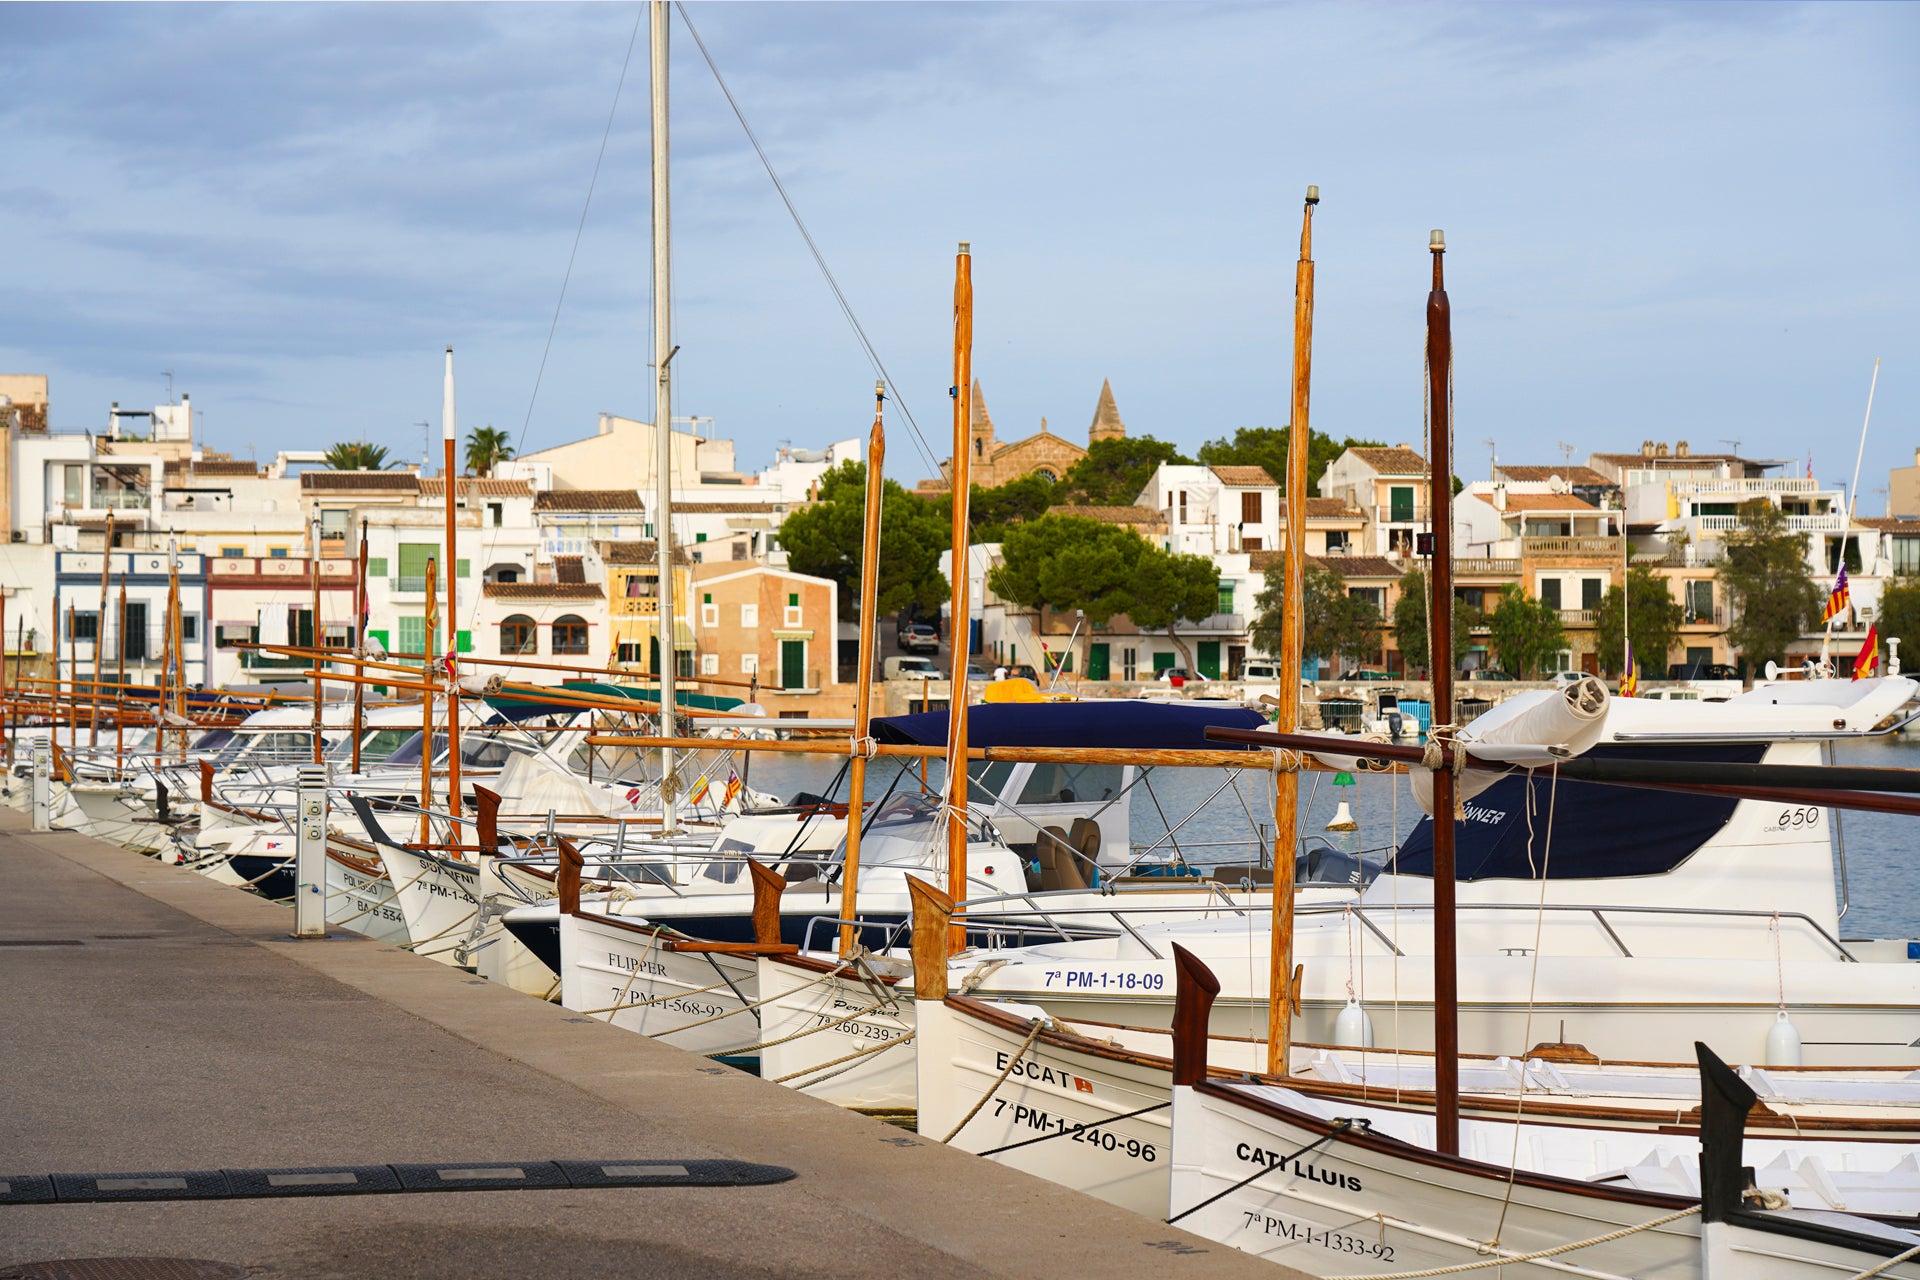 Boote und Yachten in einem typischen Hafen in Spanien